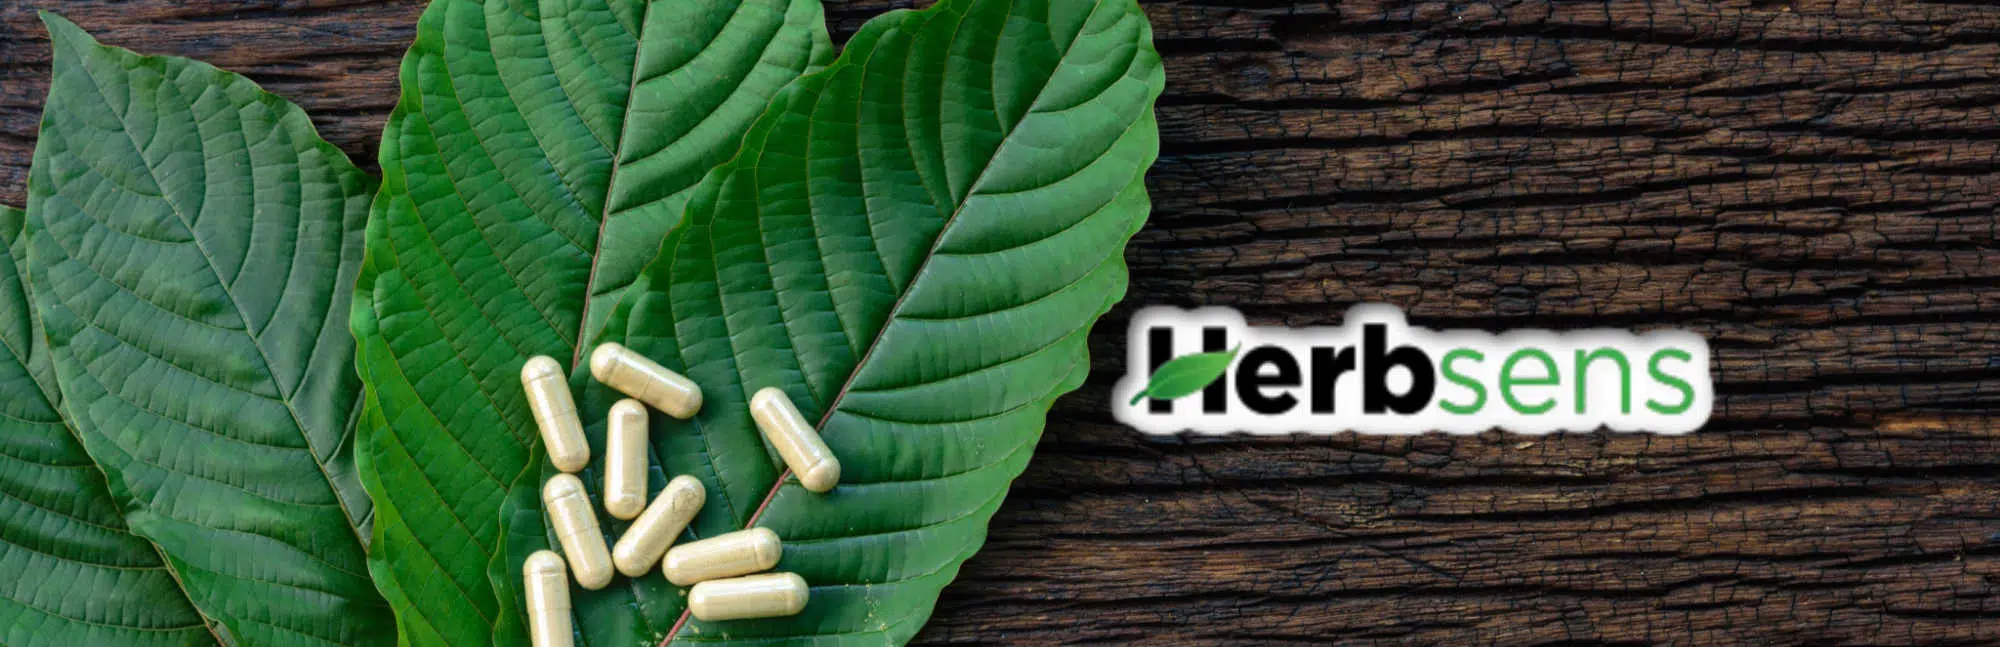 image of herbsens kratom logo